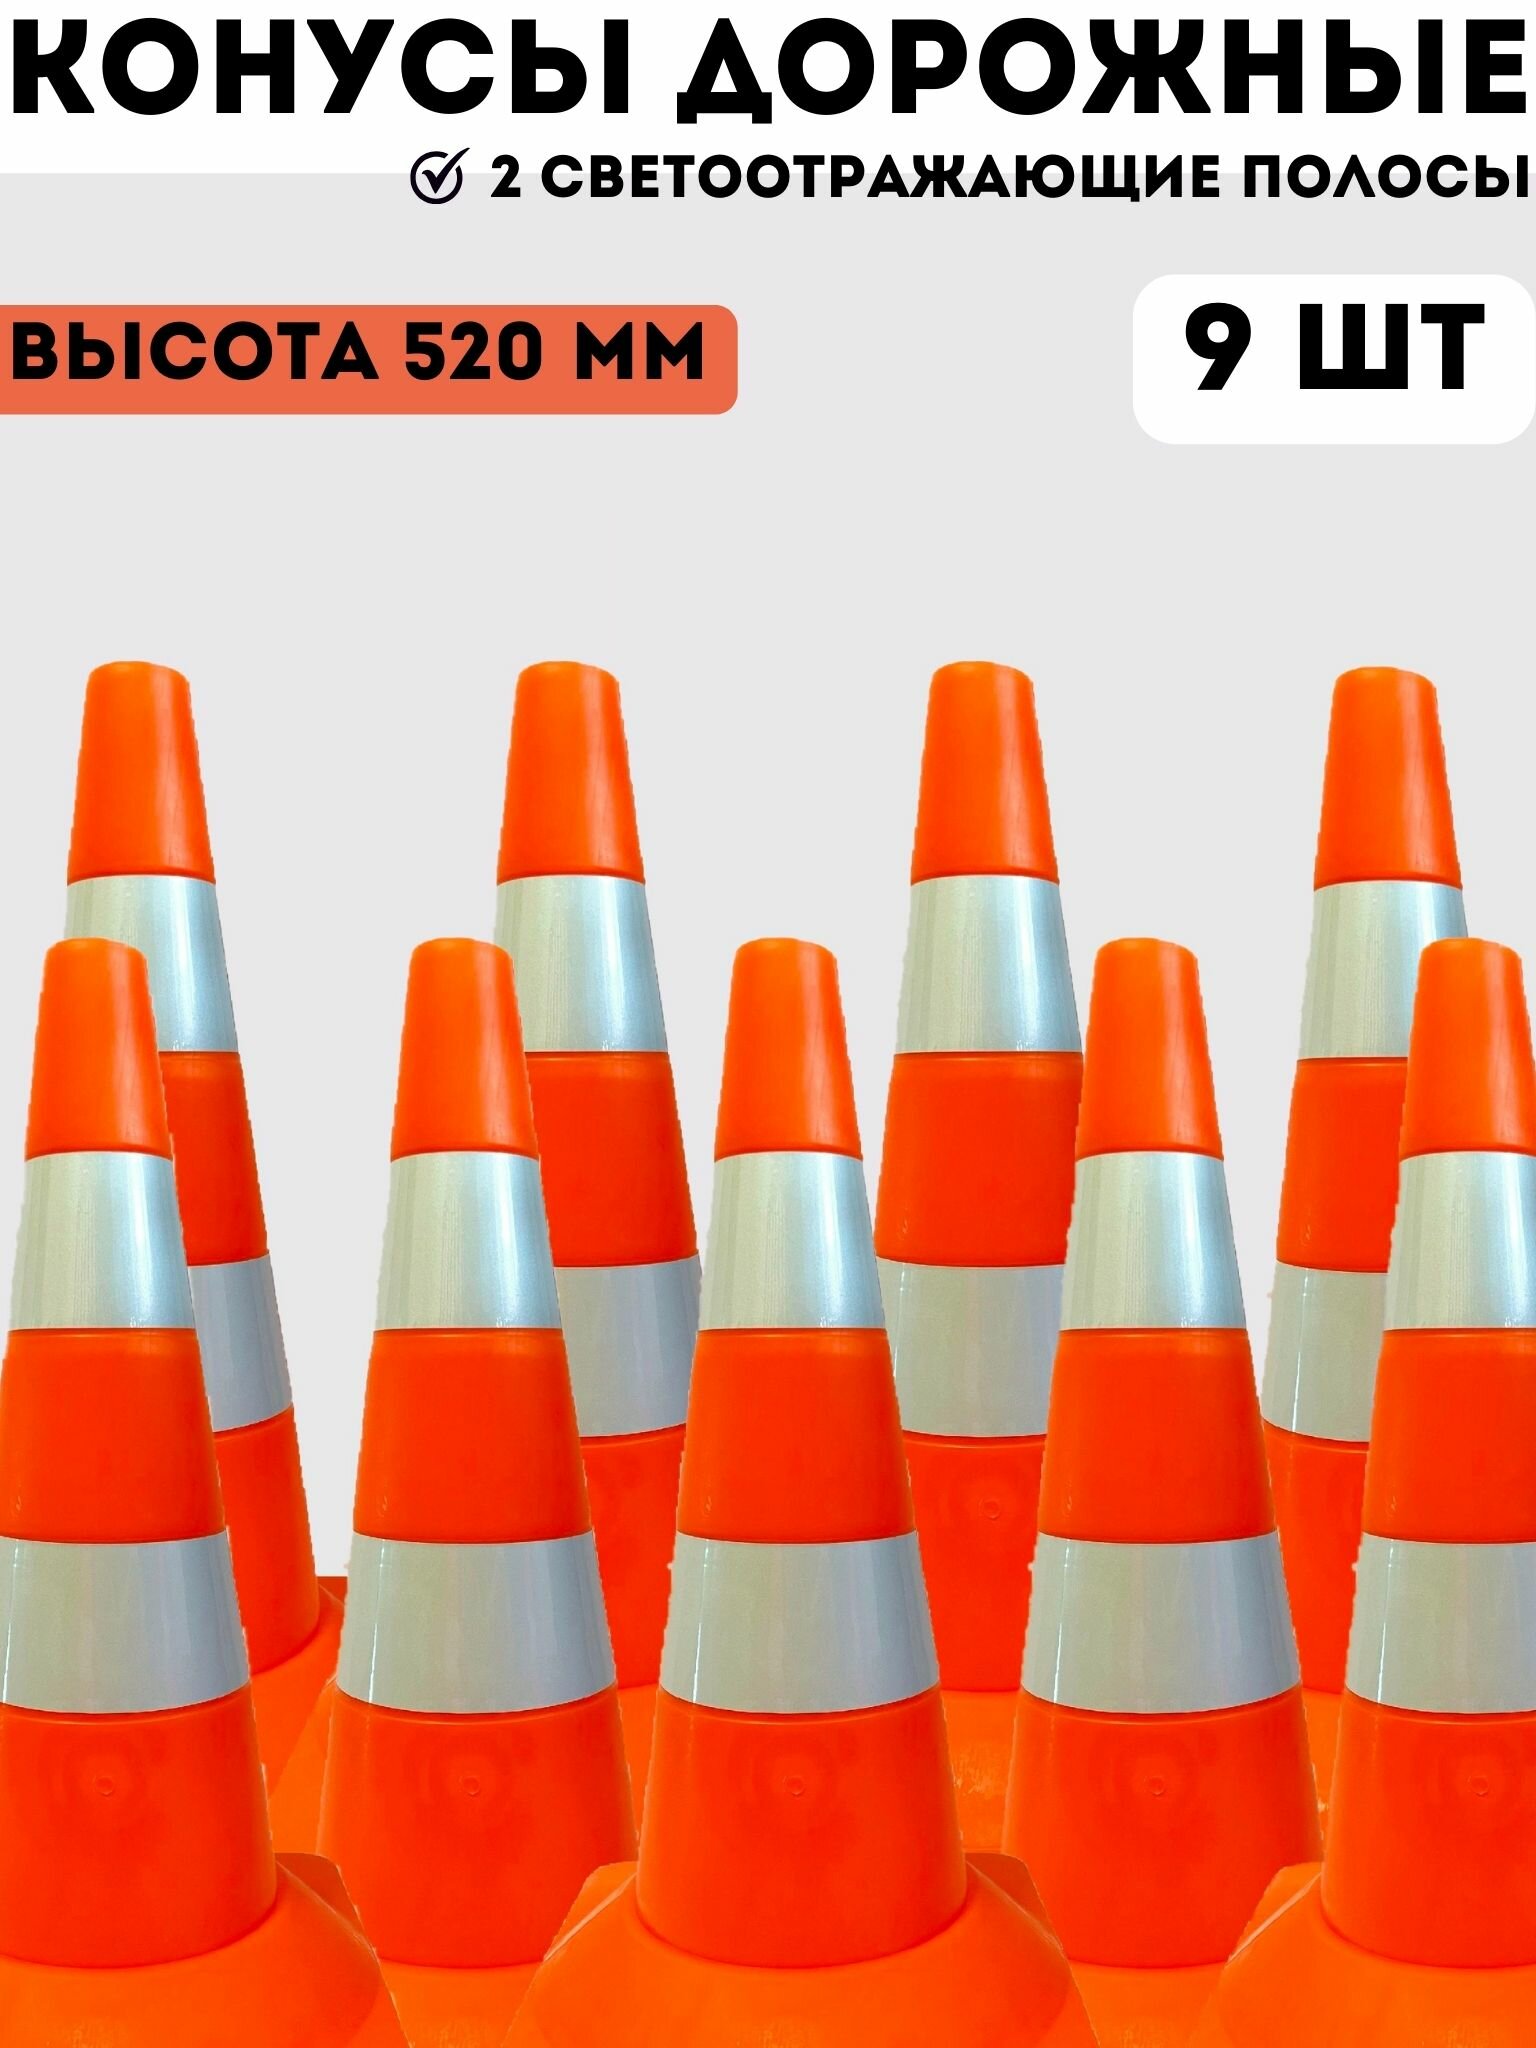 Конусы дорожные сигнальные пластиковые оранжевые с 2 светоотражающими полосами 520 мм, набор конусов 9 шт